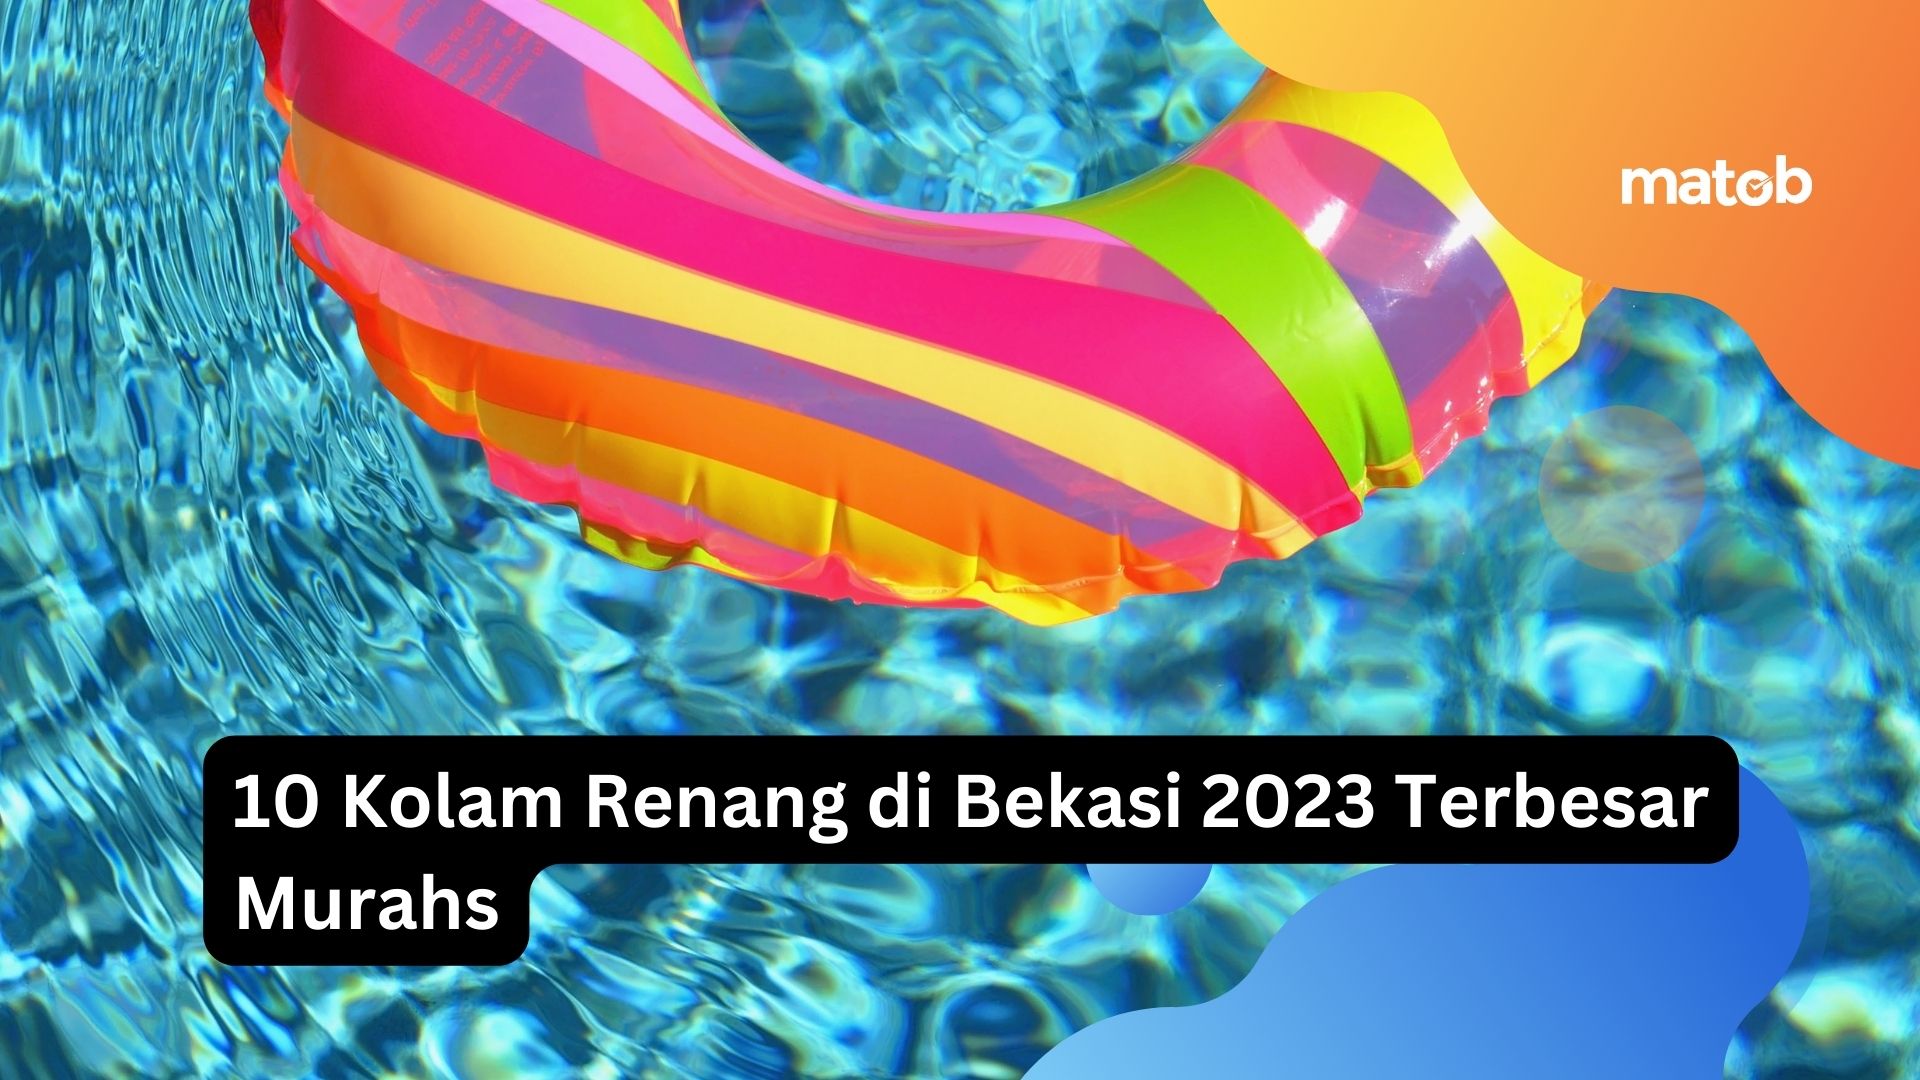 10 Kolam Renang di Bekasi 2023 Terbesar Murah